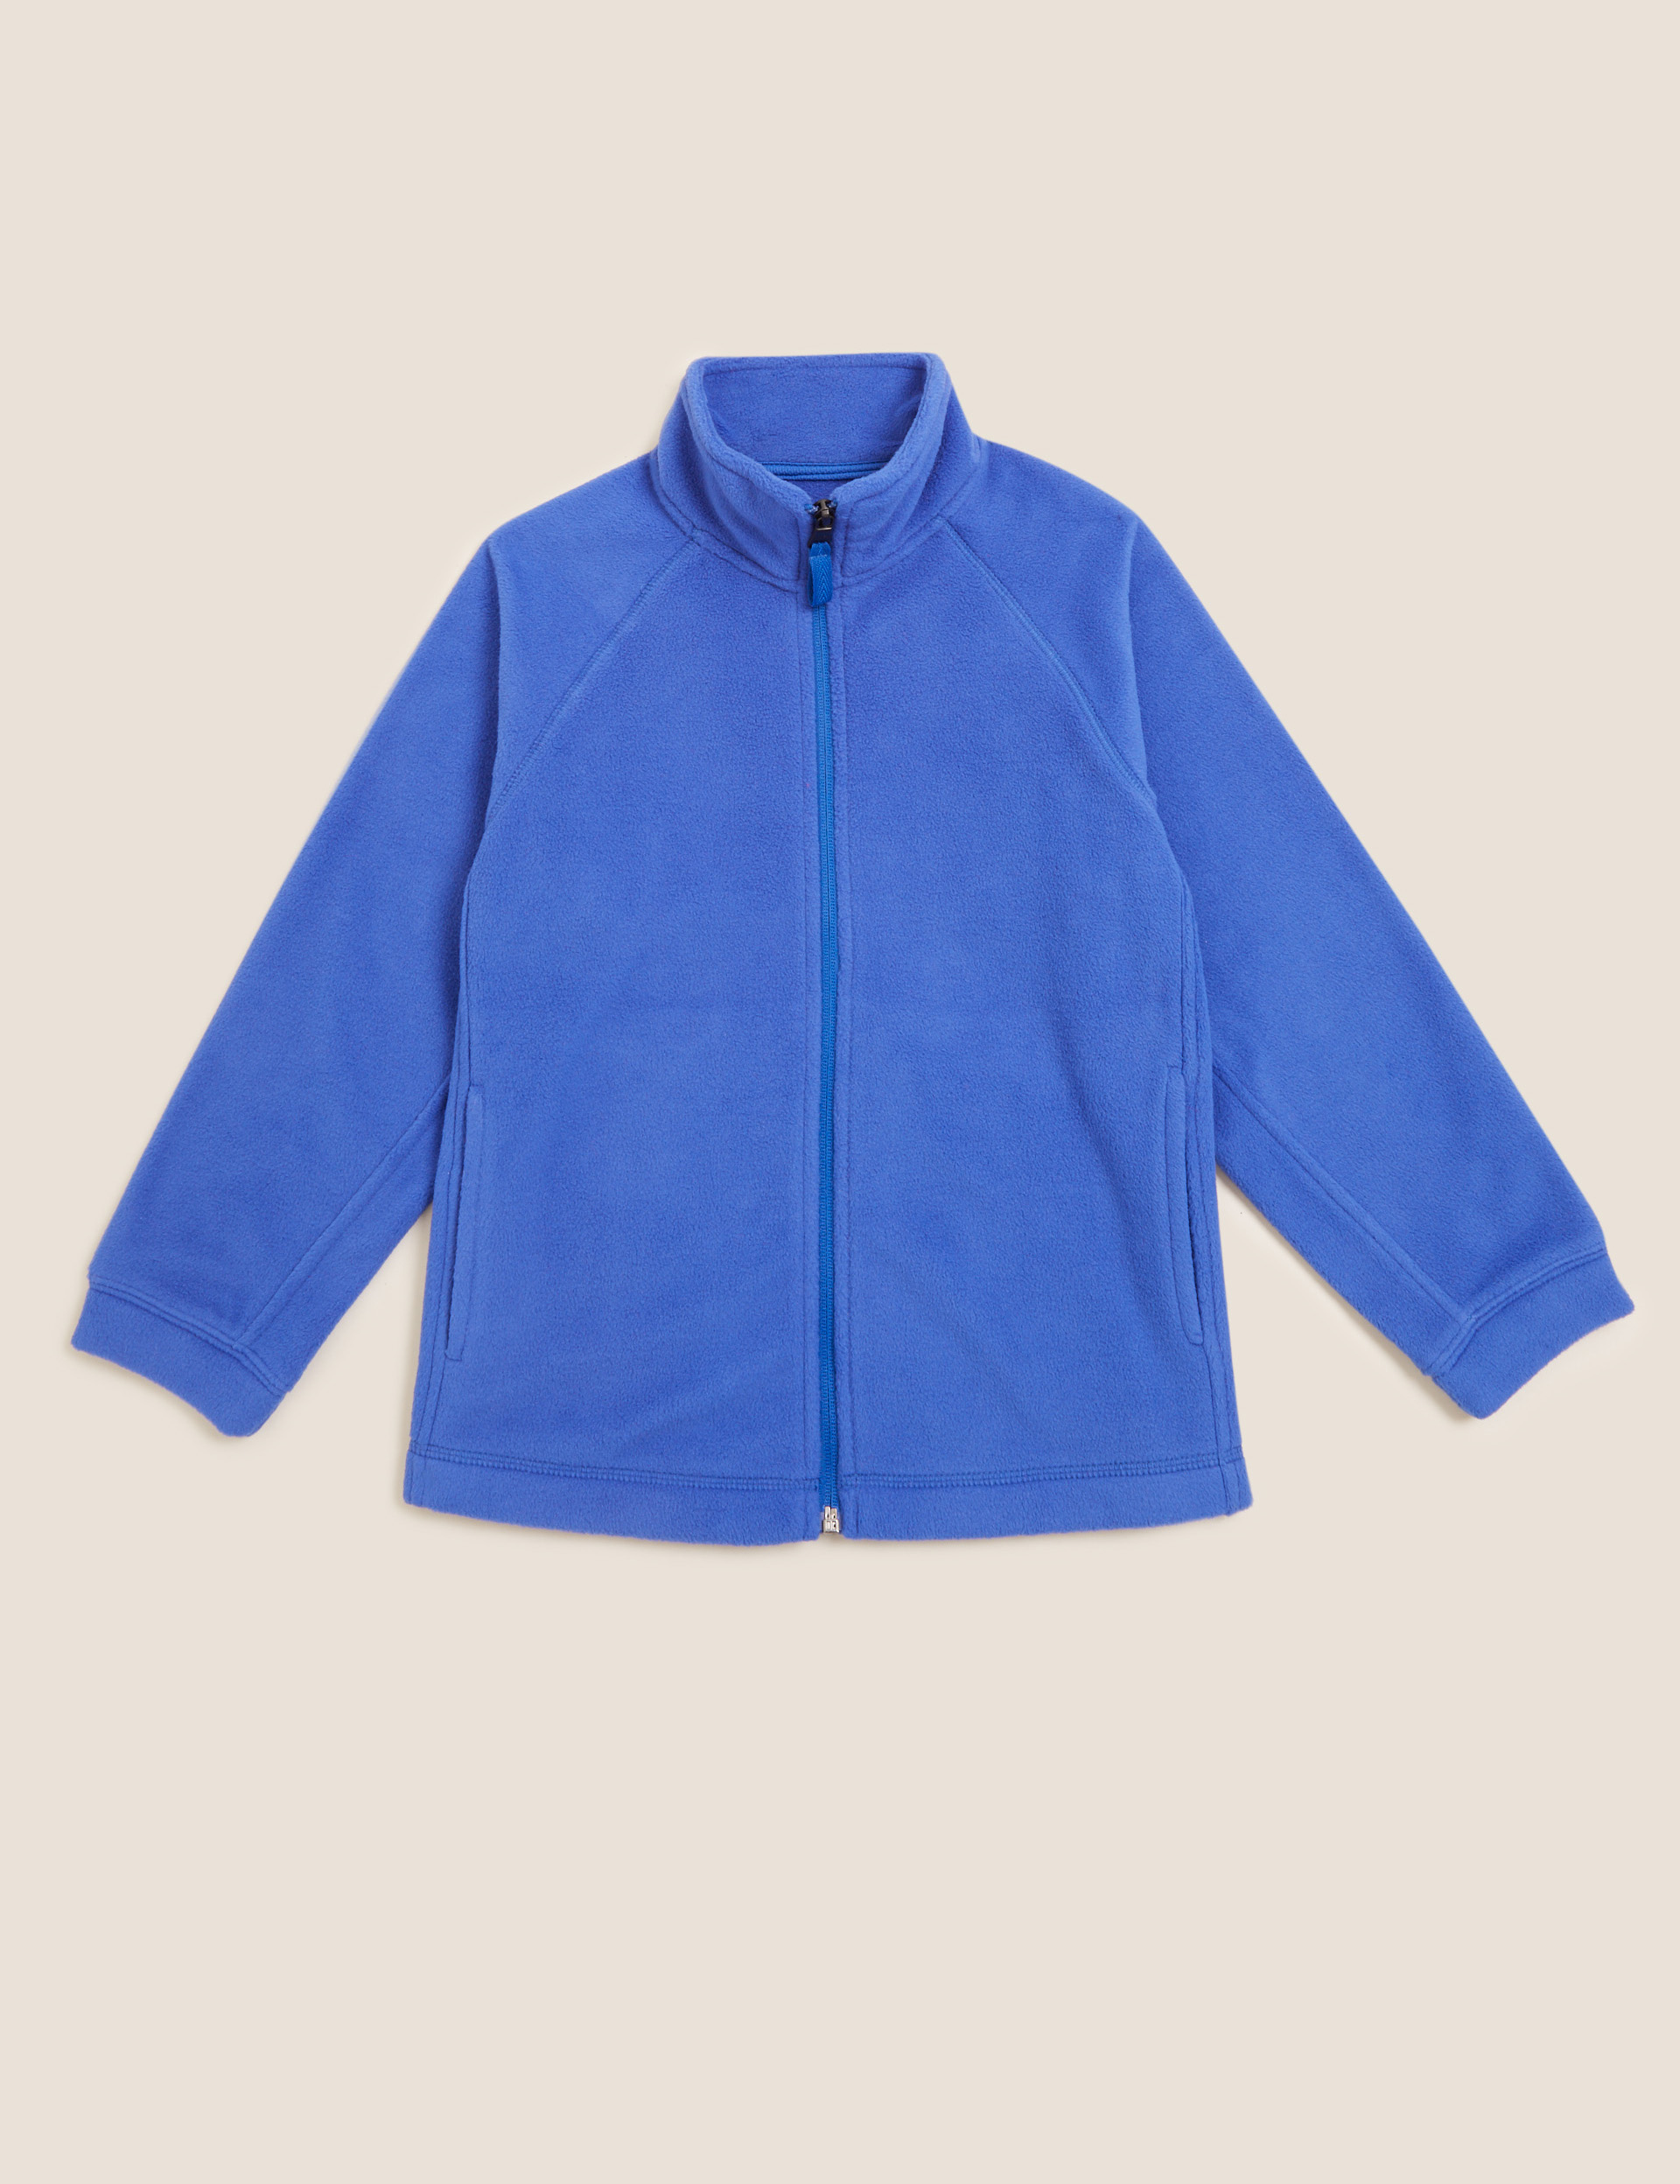 Kids' Big Polar Fleece Jacket, Royal Blue, M 